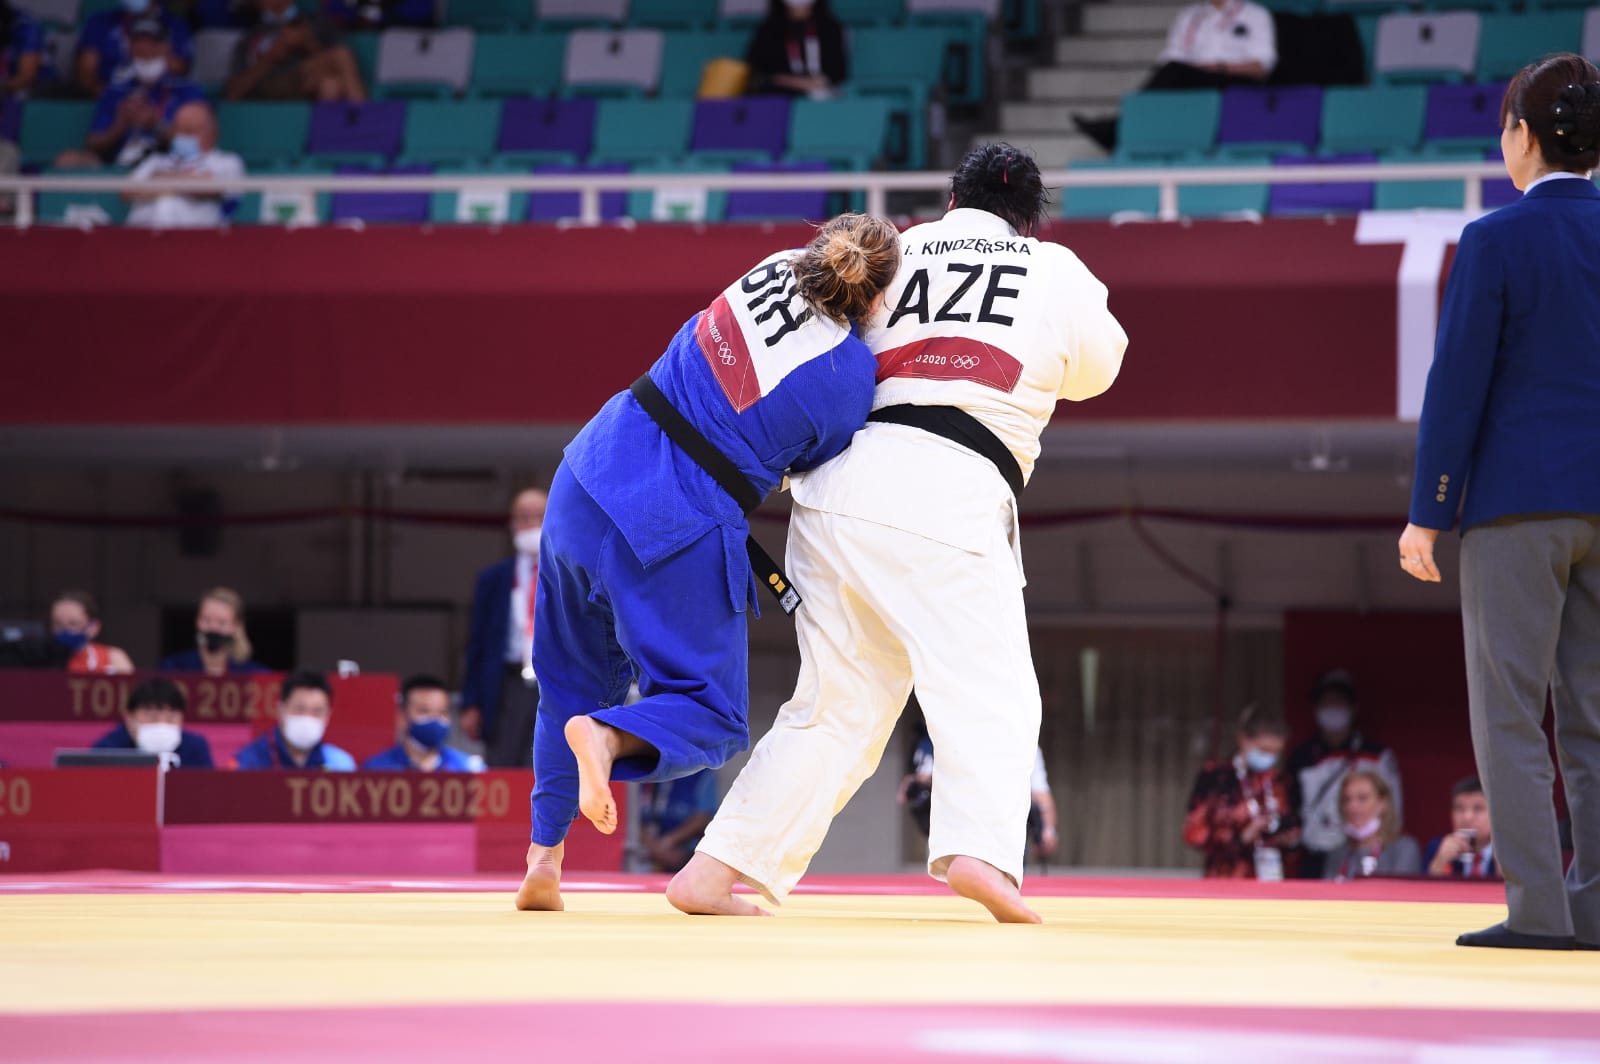 Azeri 2020. Дзюдо Азербайджан. Tokyo 2020 Judo. Первый азербайджанский Олимпийский.